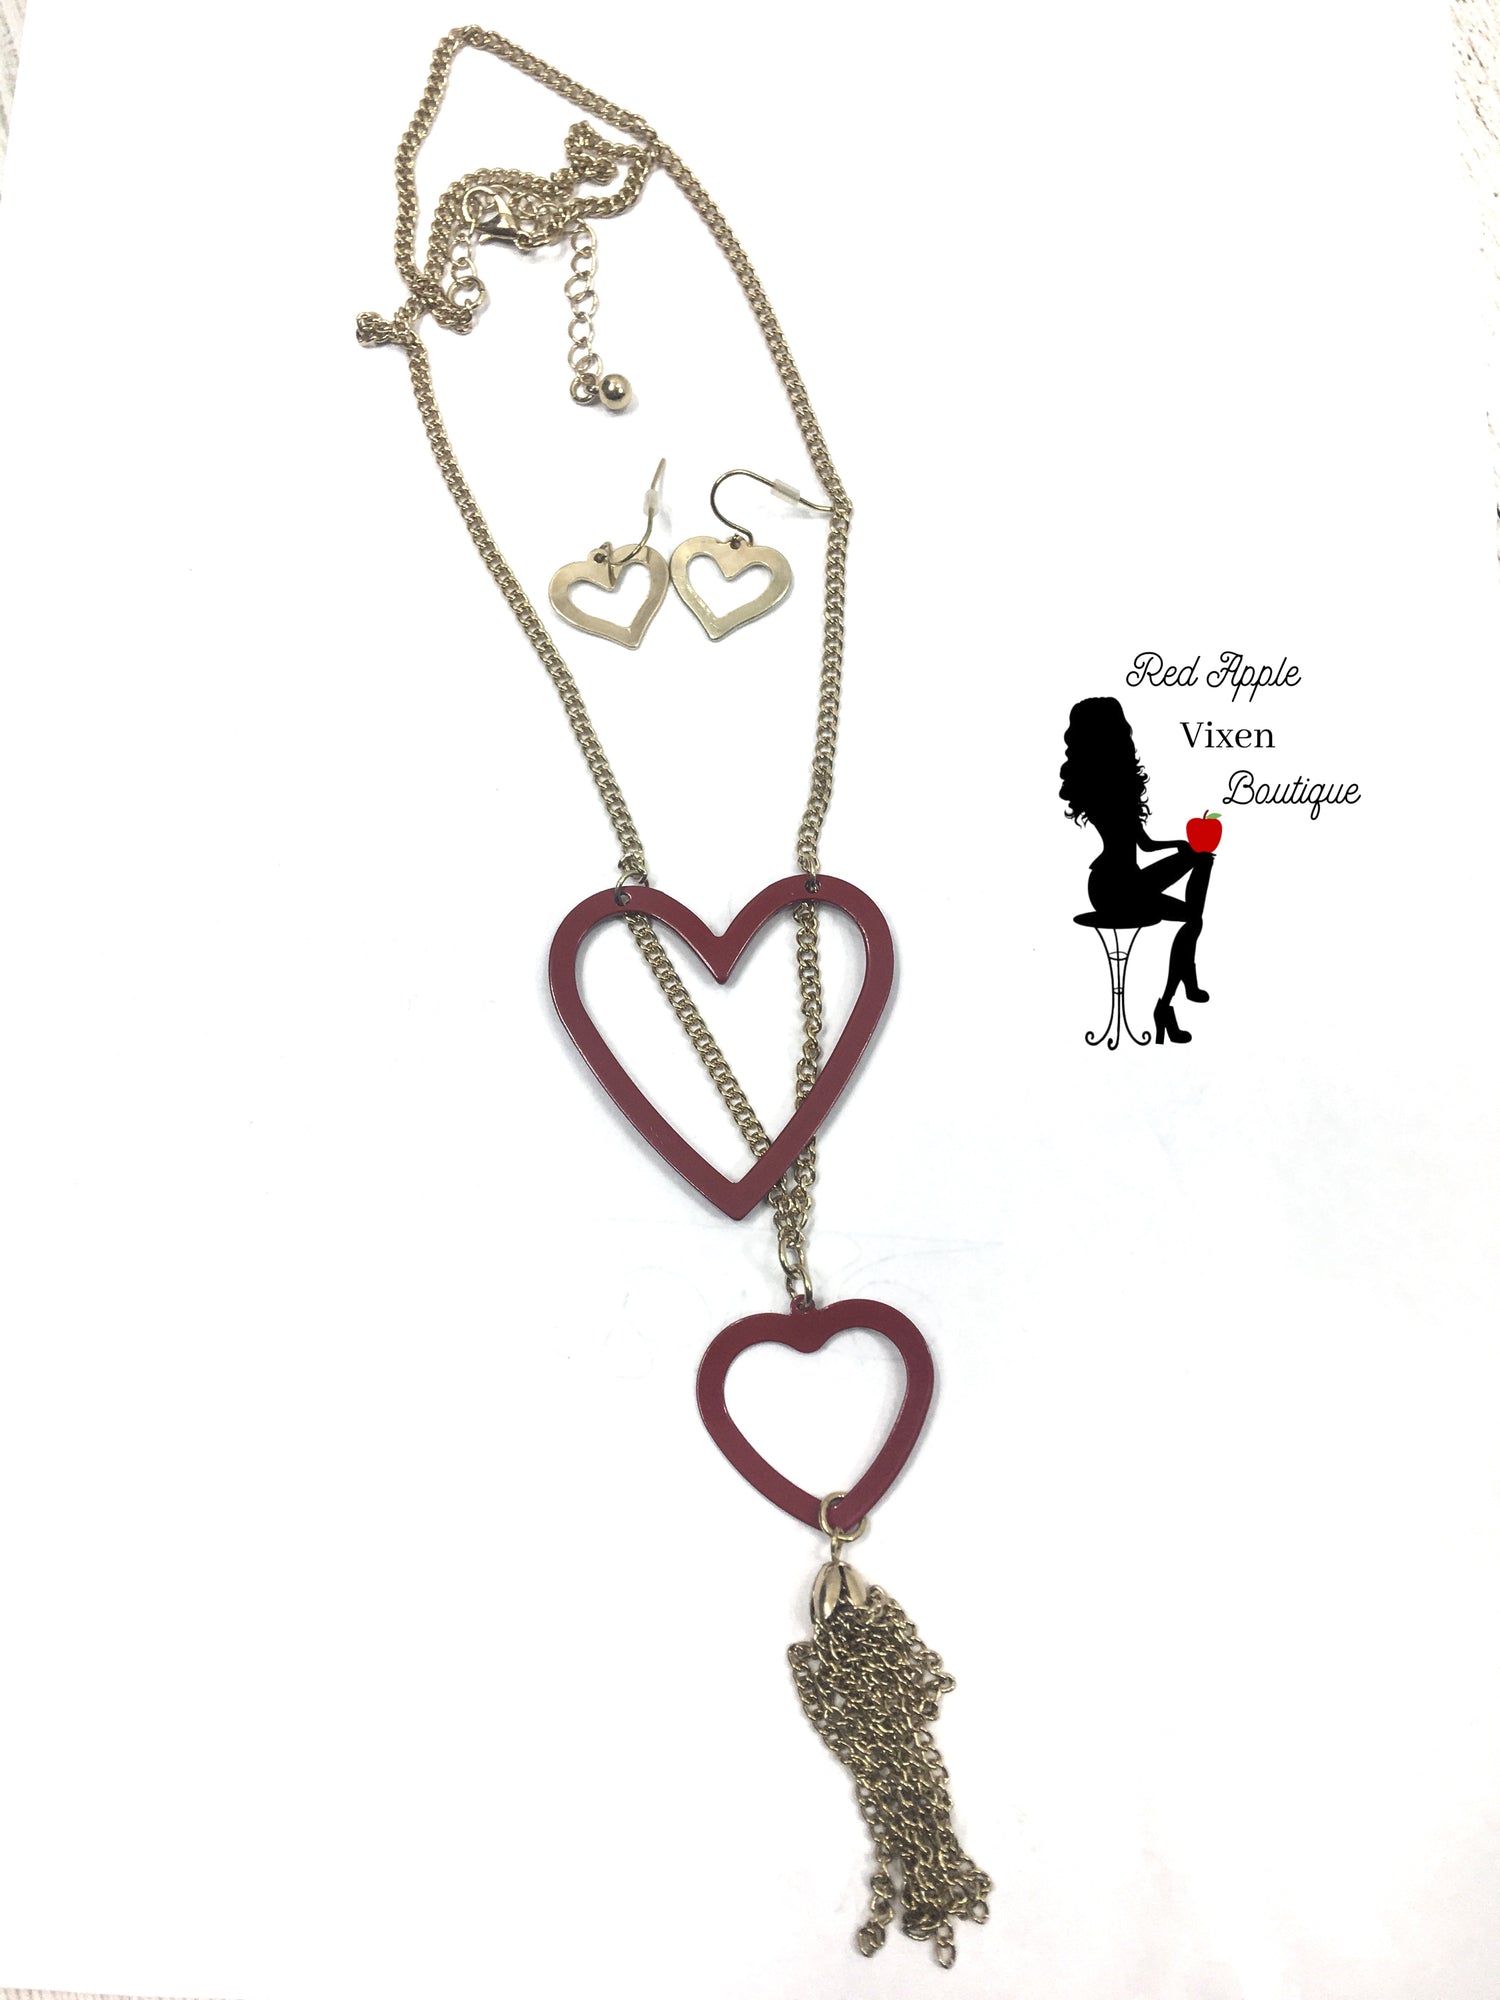 Double Heart Pendant Necklace - Red Apple Vixen Boutique